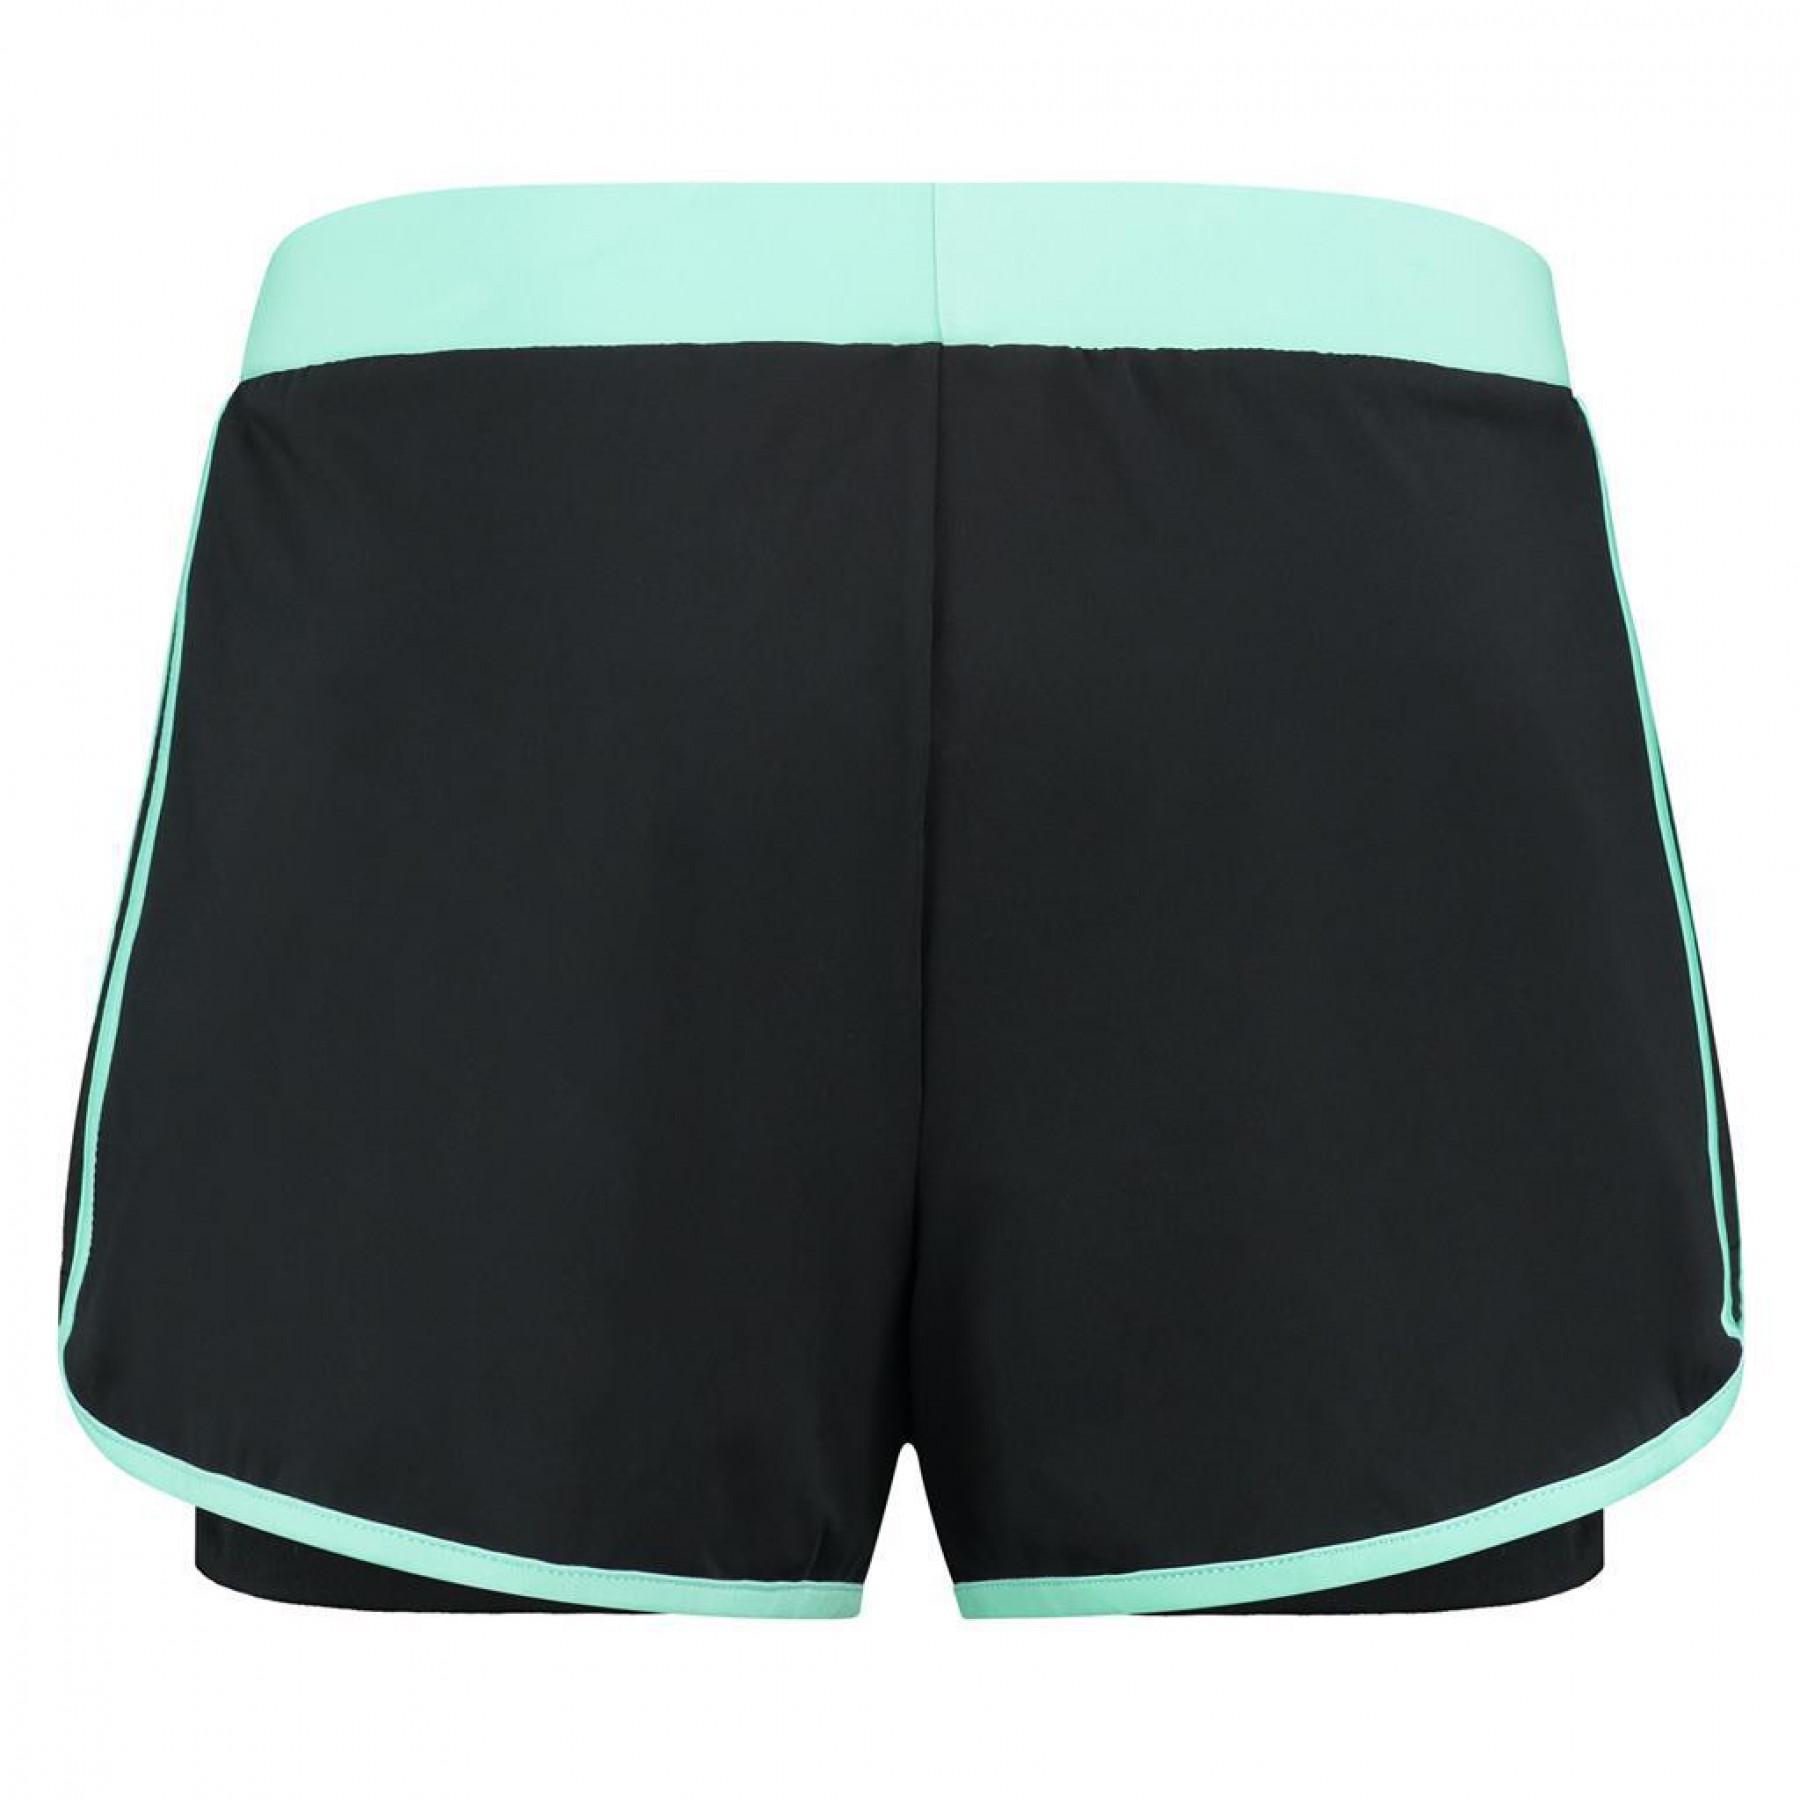 Dames shorts K-Swiss hypercourt 2